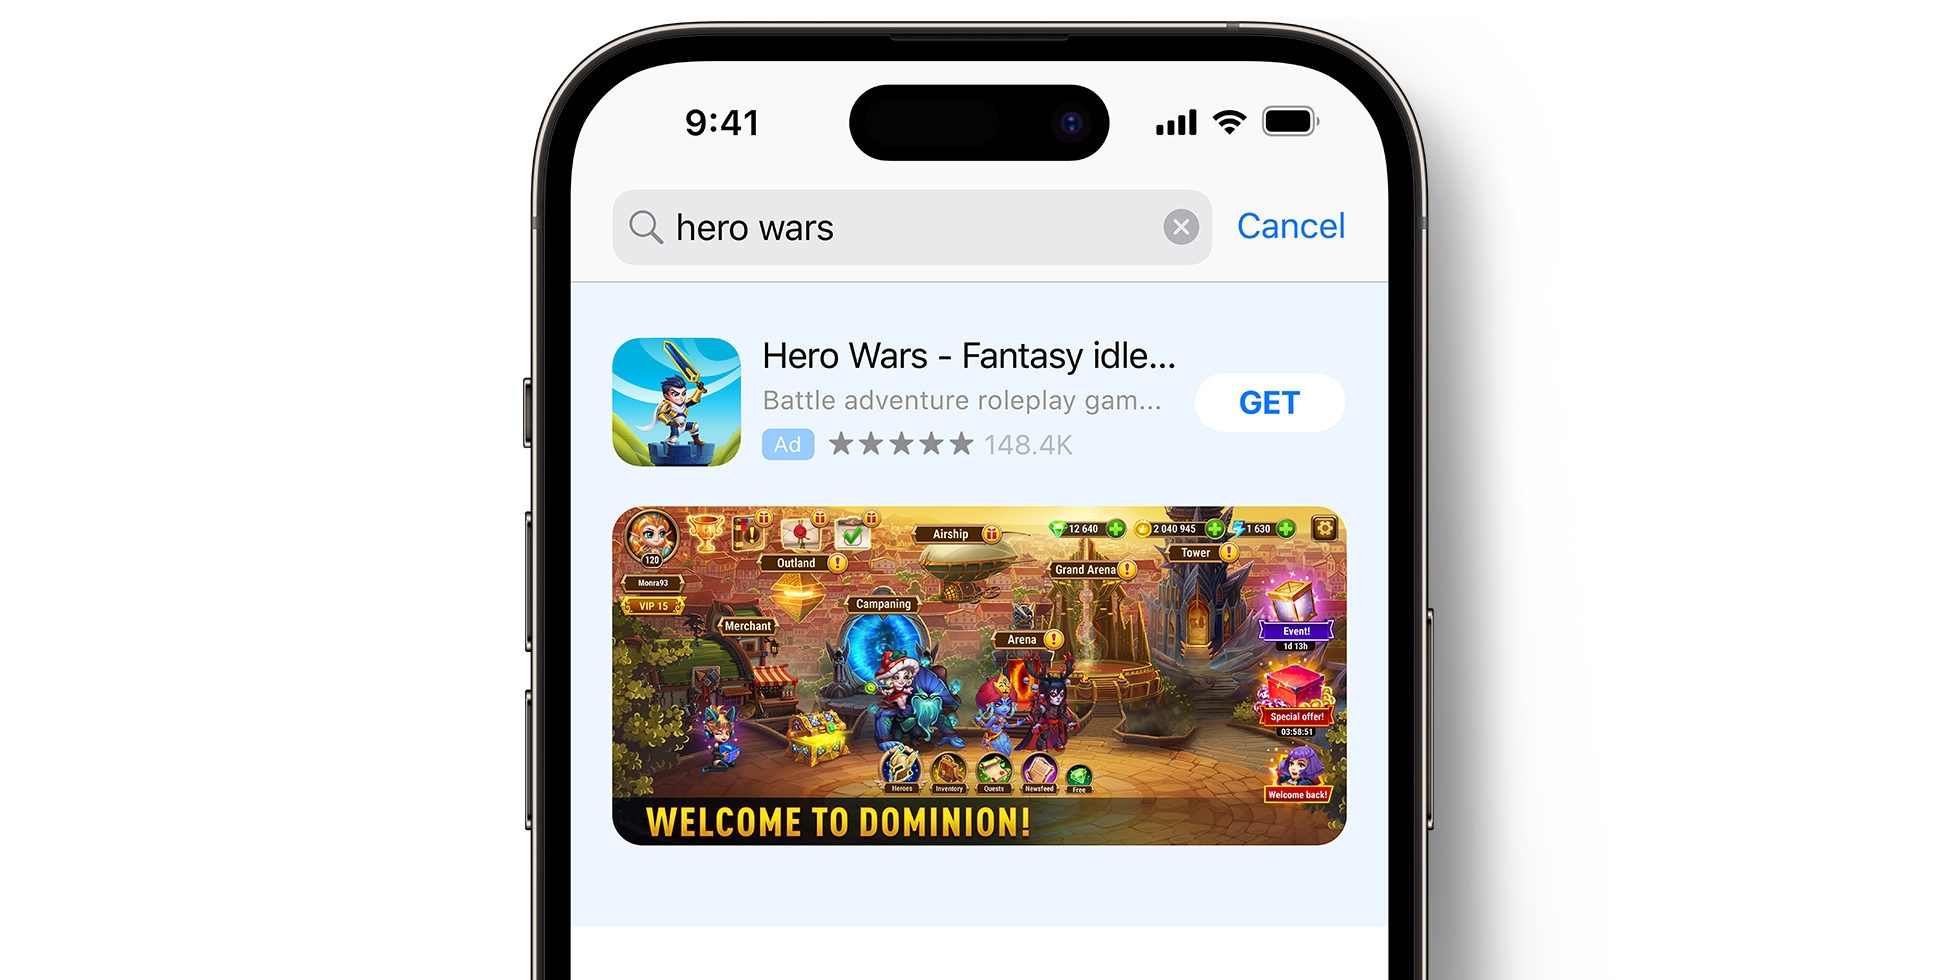 半裁剪的 iPhone 背景图片，屏幕上显示着“Hero Wars”的 App Store 广告